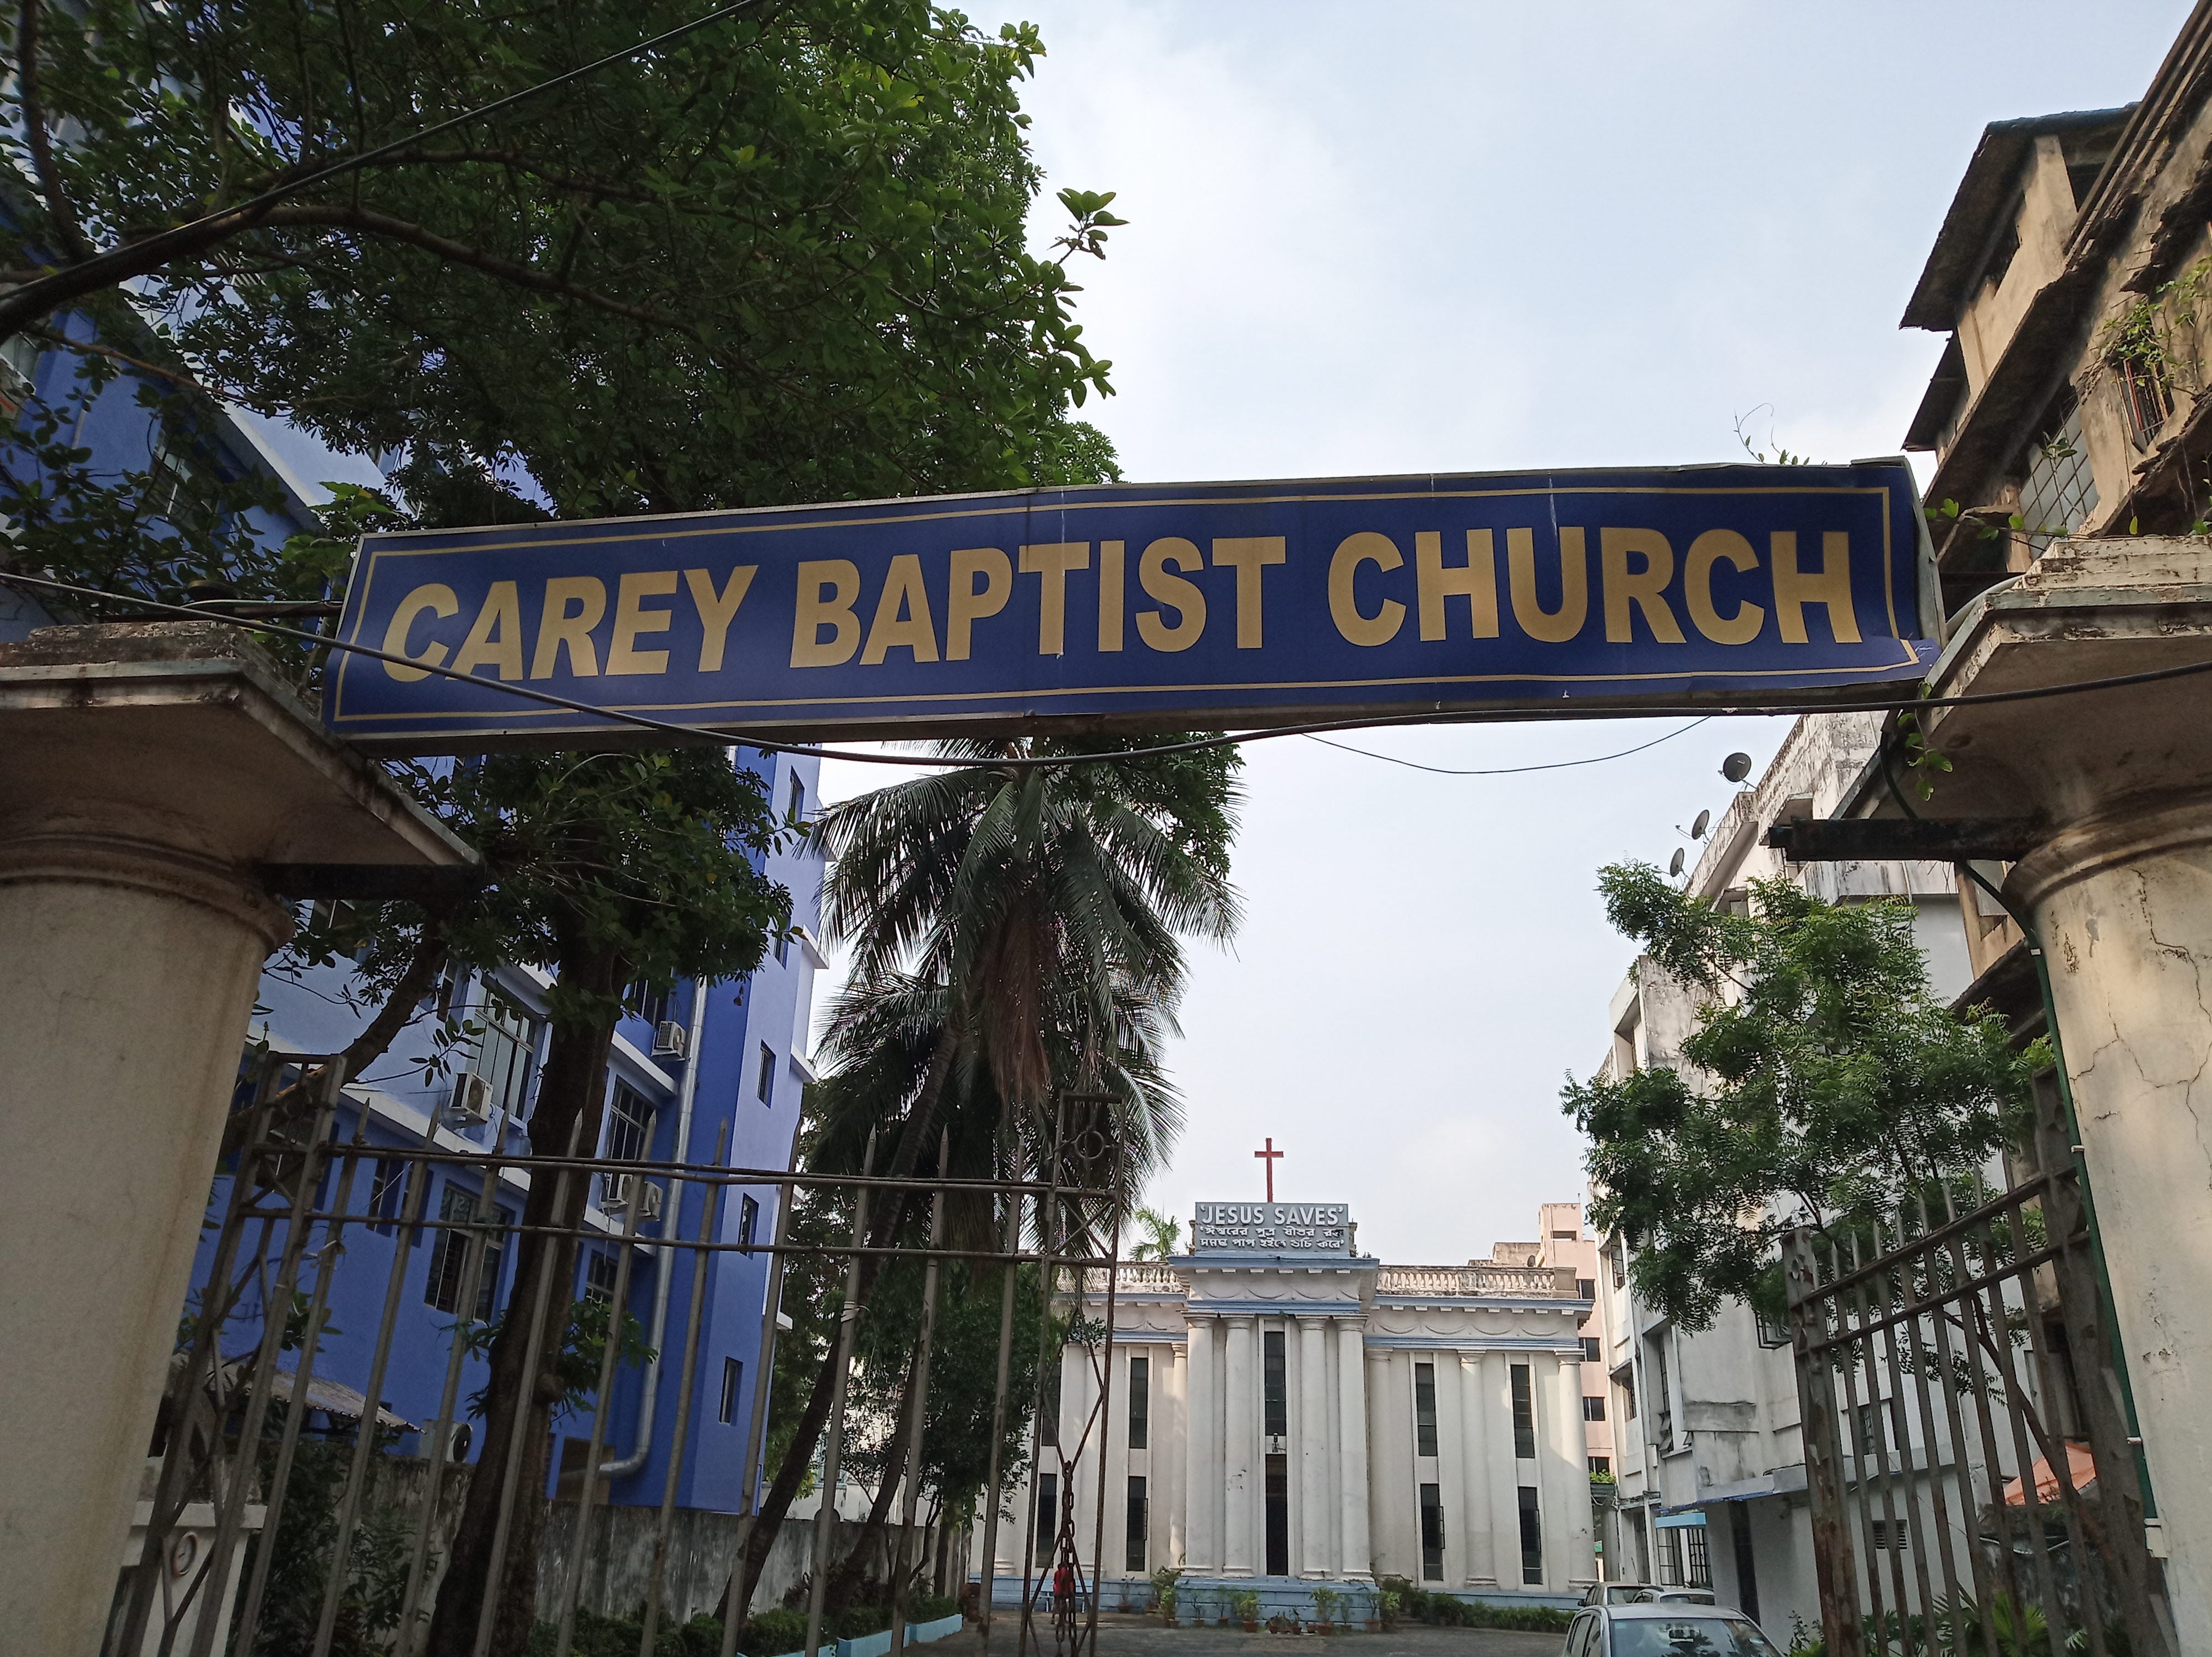 Entrance of Carey Baptist Church